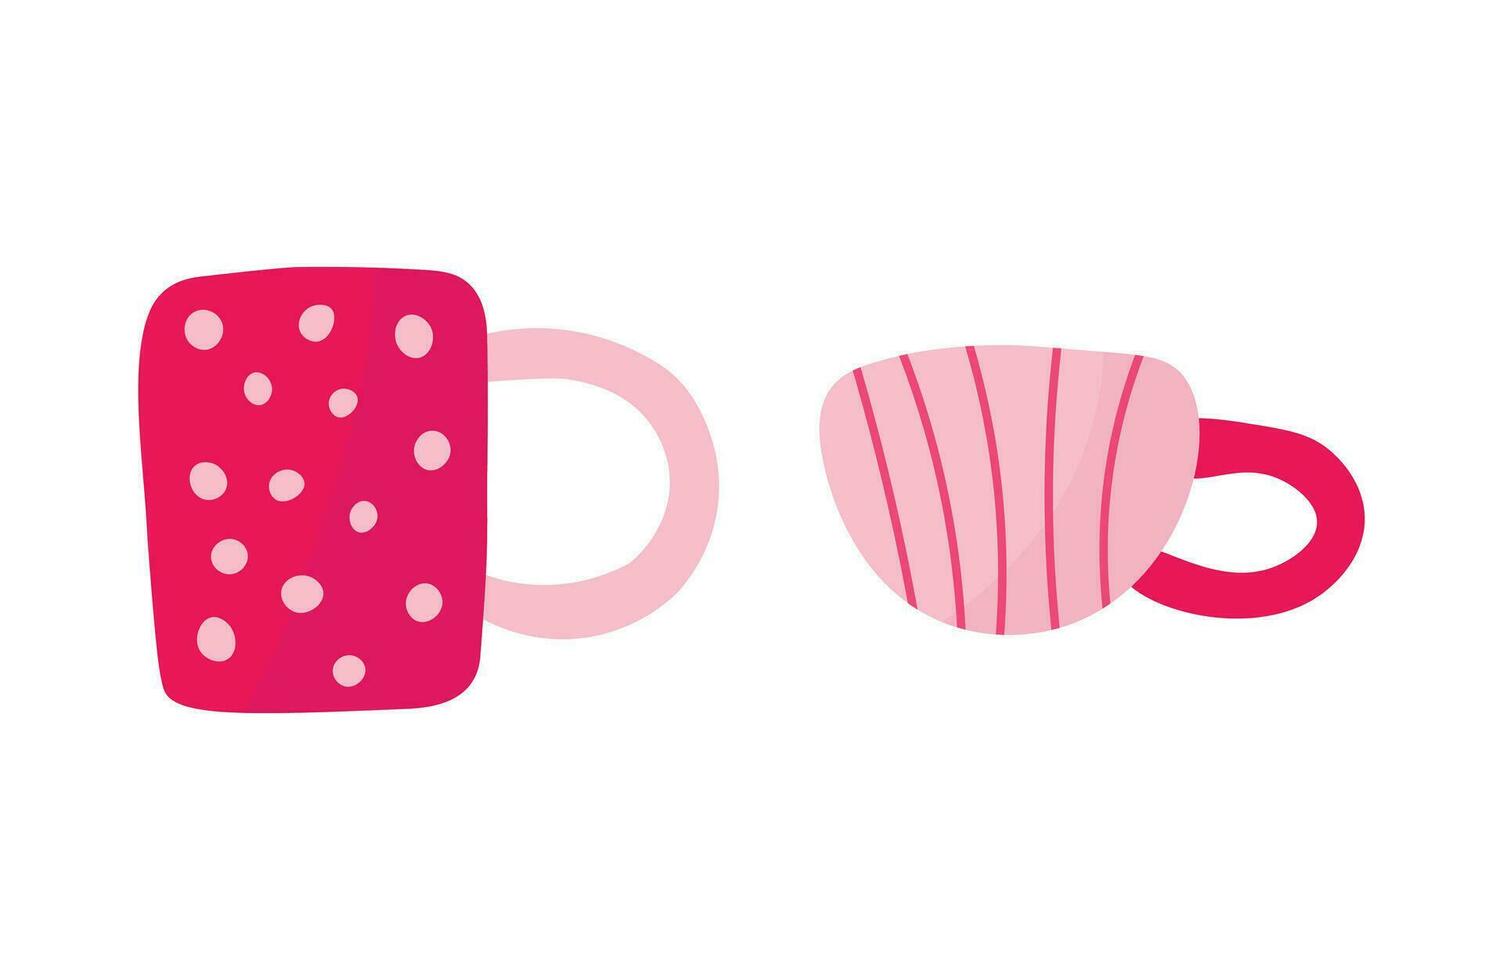 roze koffie en thee cups reeks van illustraties. meisjesachtig thee roze items voor heet drankje. vector